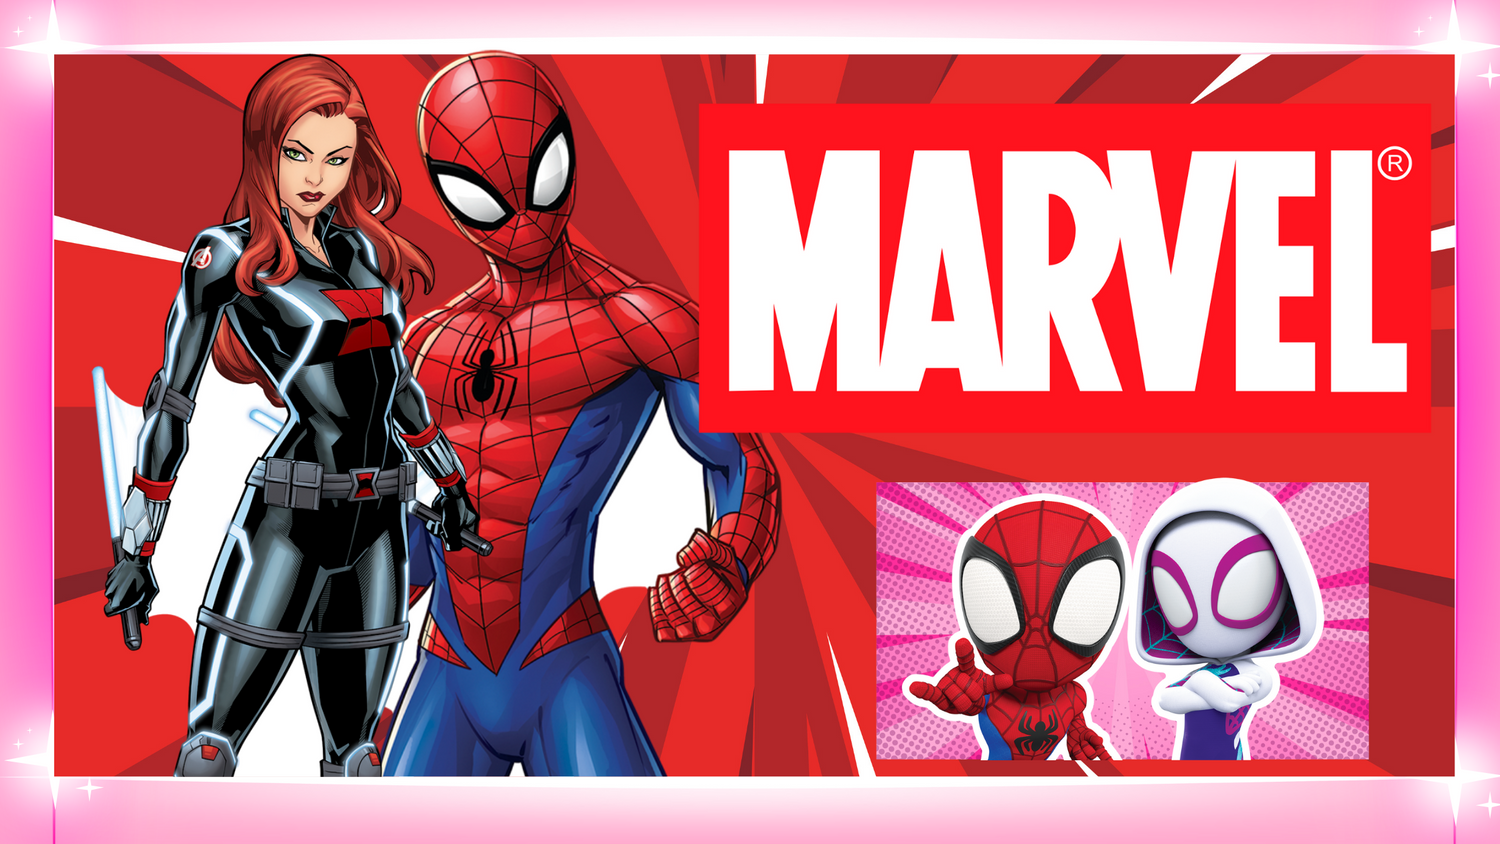 Spider-Gwen Cardboard Cutout, 3ft - Avengers